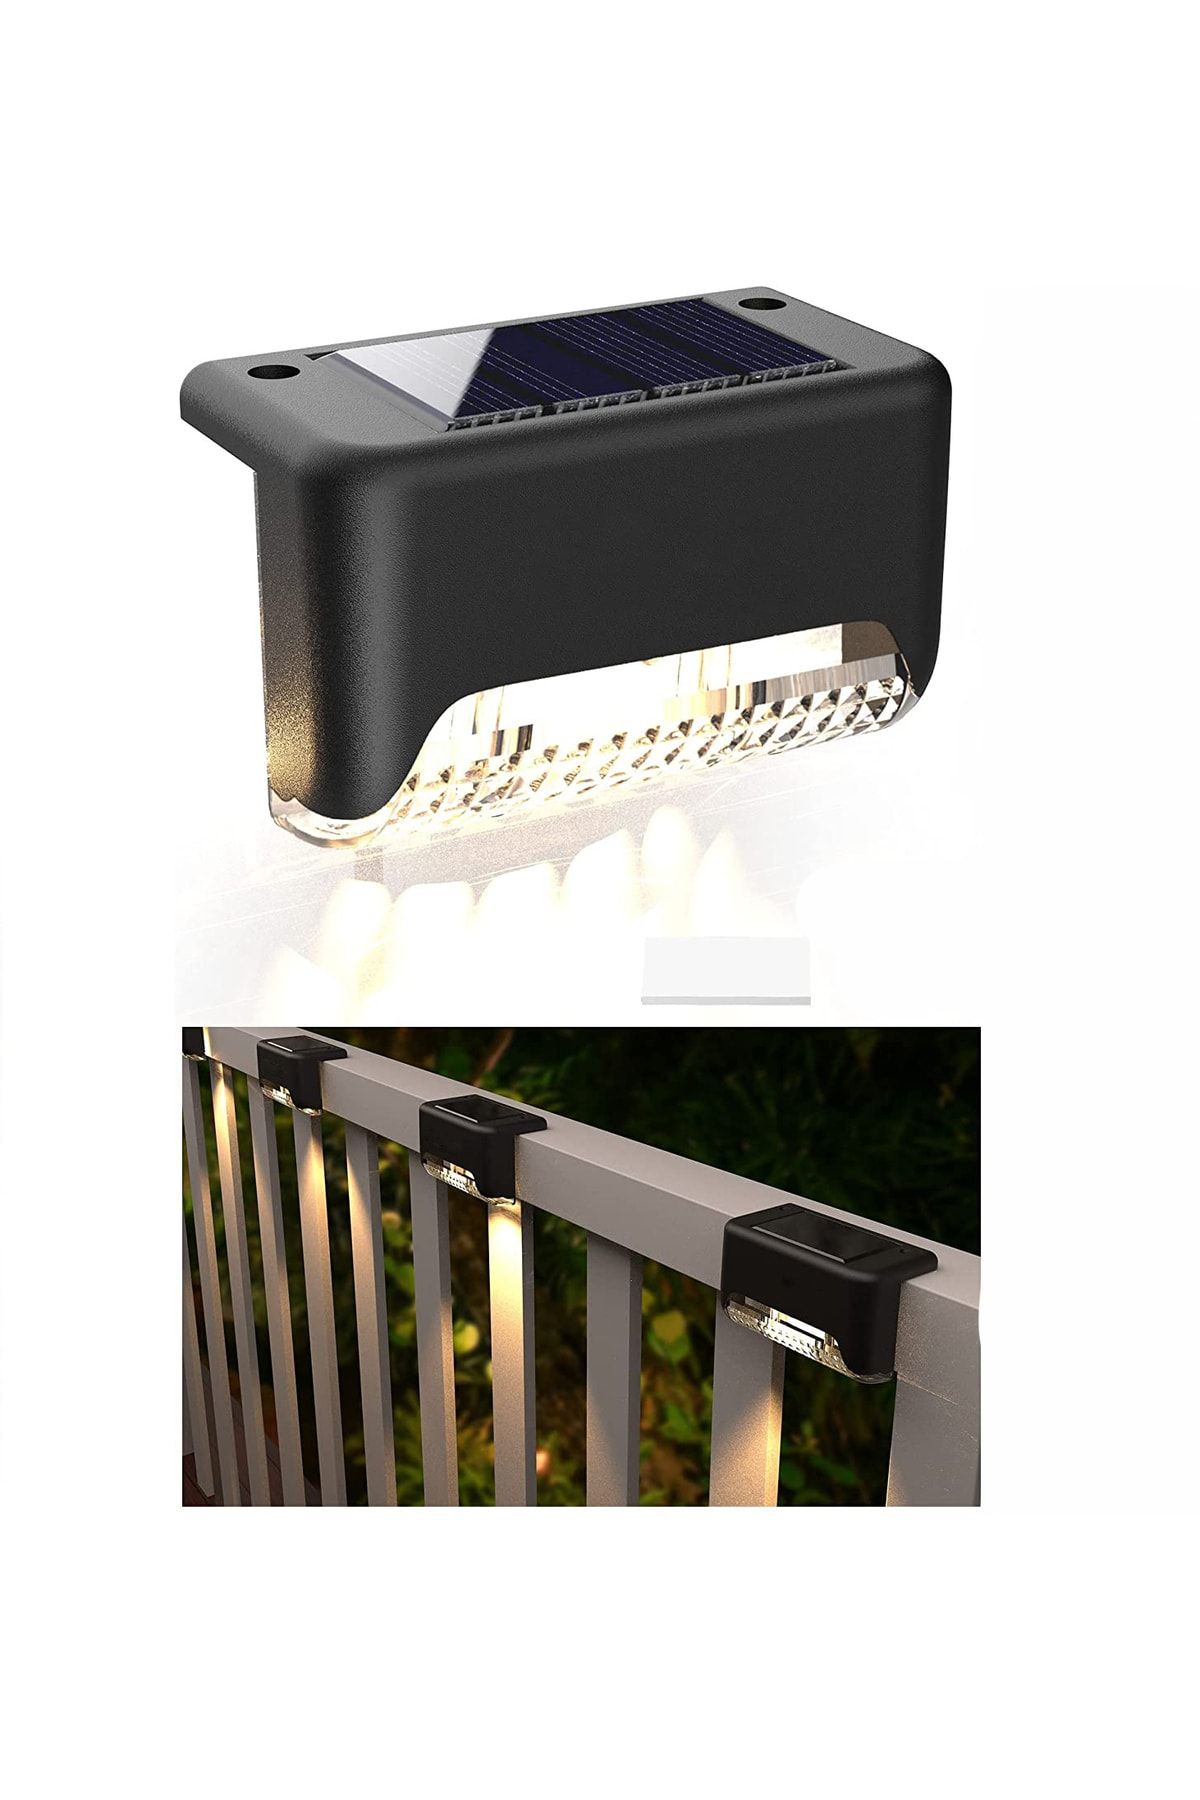 ROBEVE 4 Adet L Solar Led Güneş Enerjili Su Geçirmez Köşebent Led Işık Merdiven Veranda Bahçe Aydınlatma